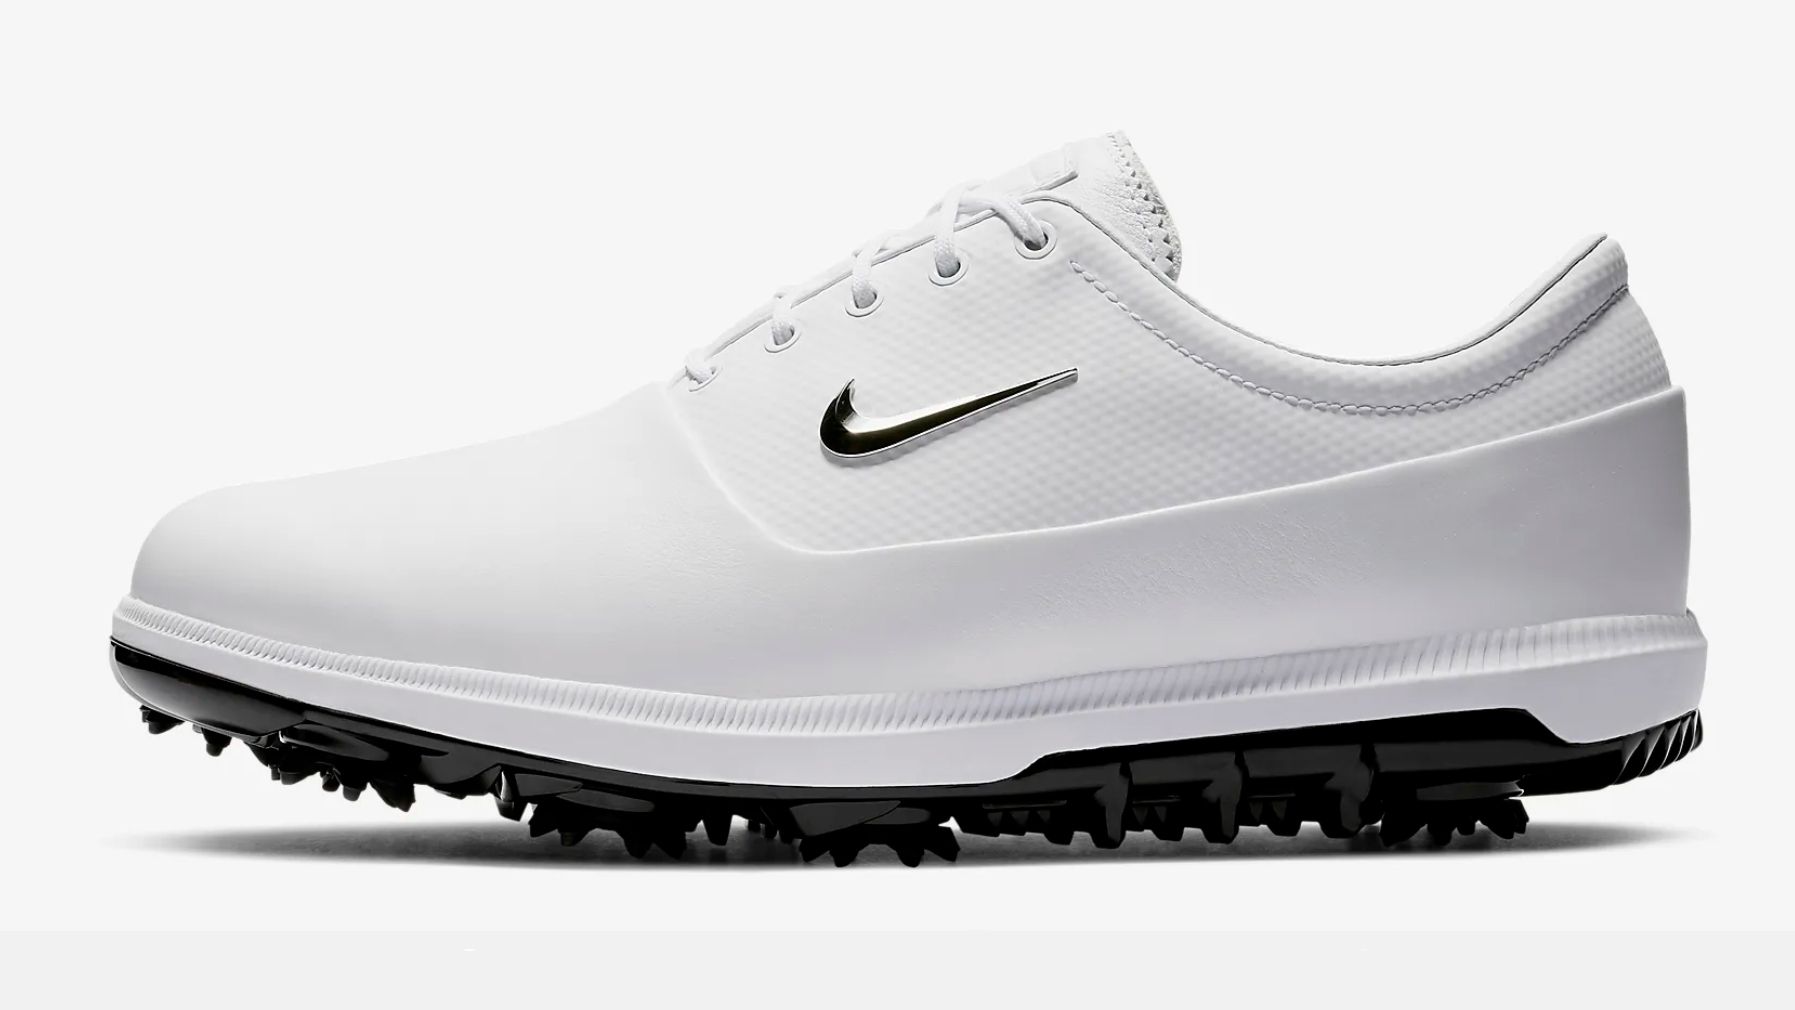  Beste Geschenke für Golfer: Nike Air Zoom Victory Tour Golfschuhe